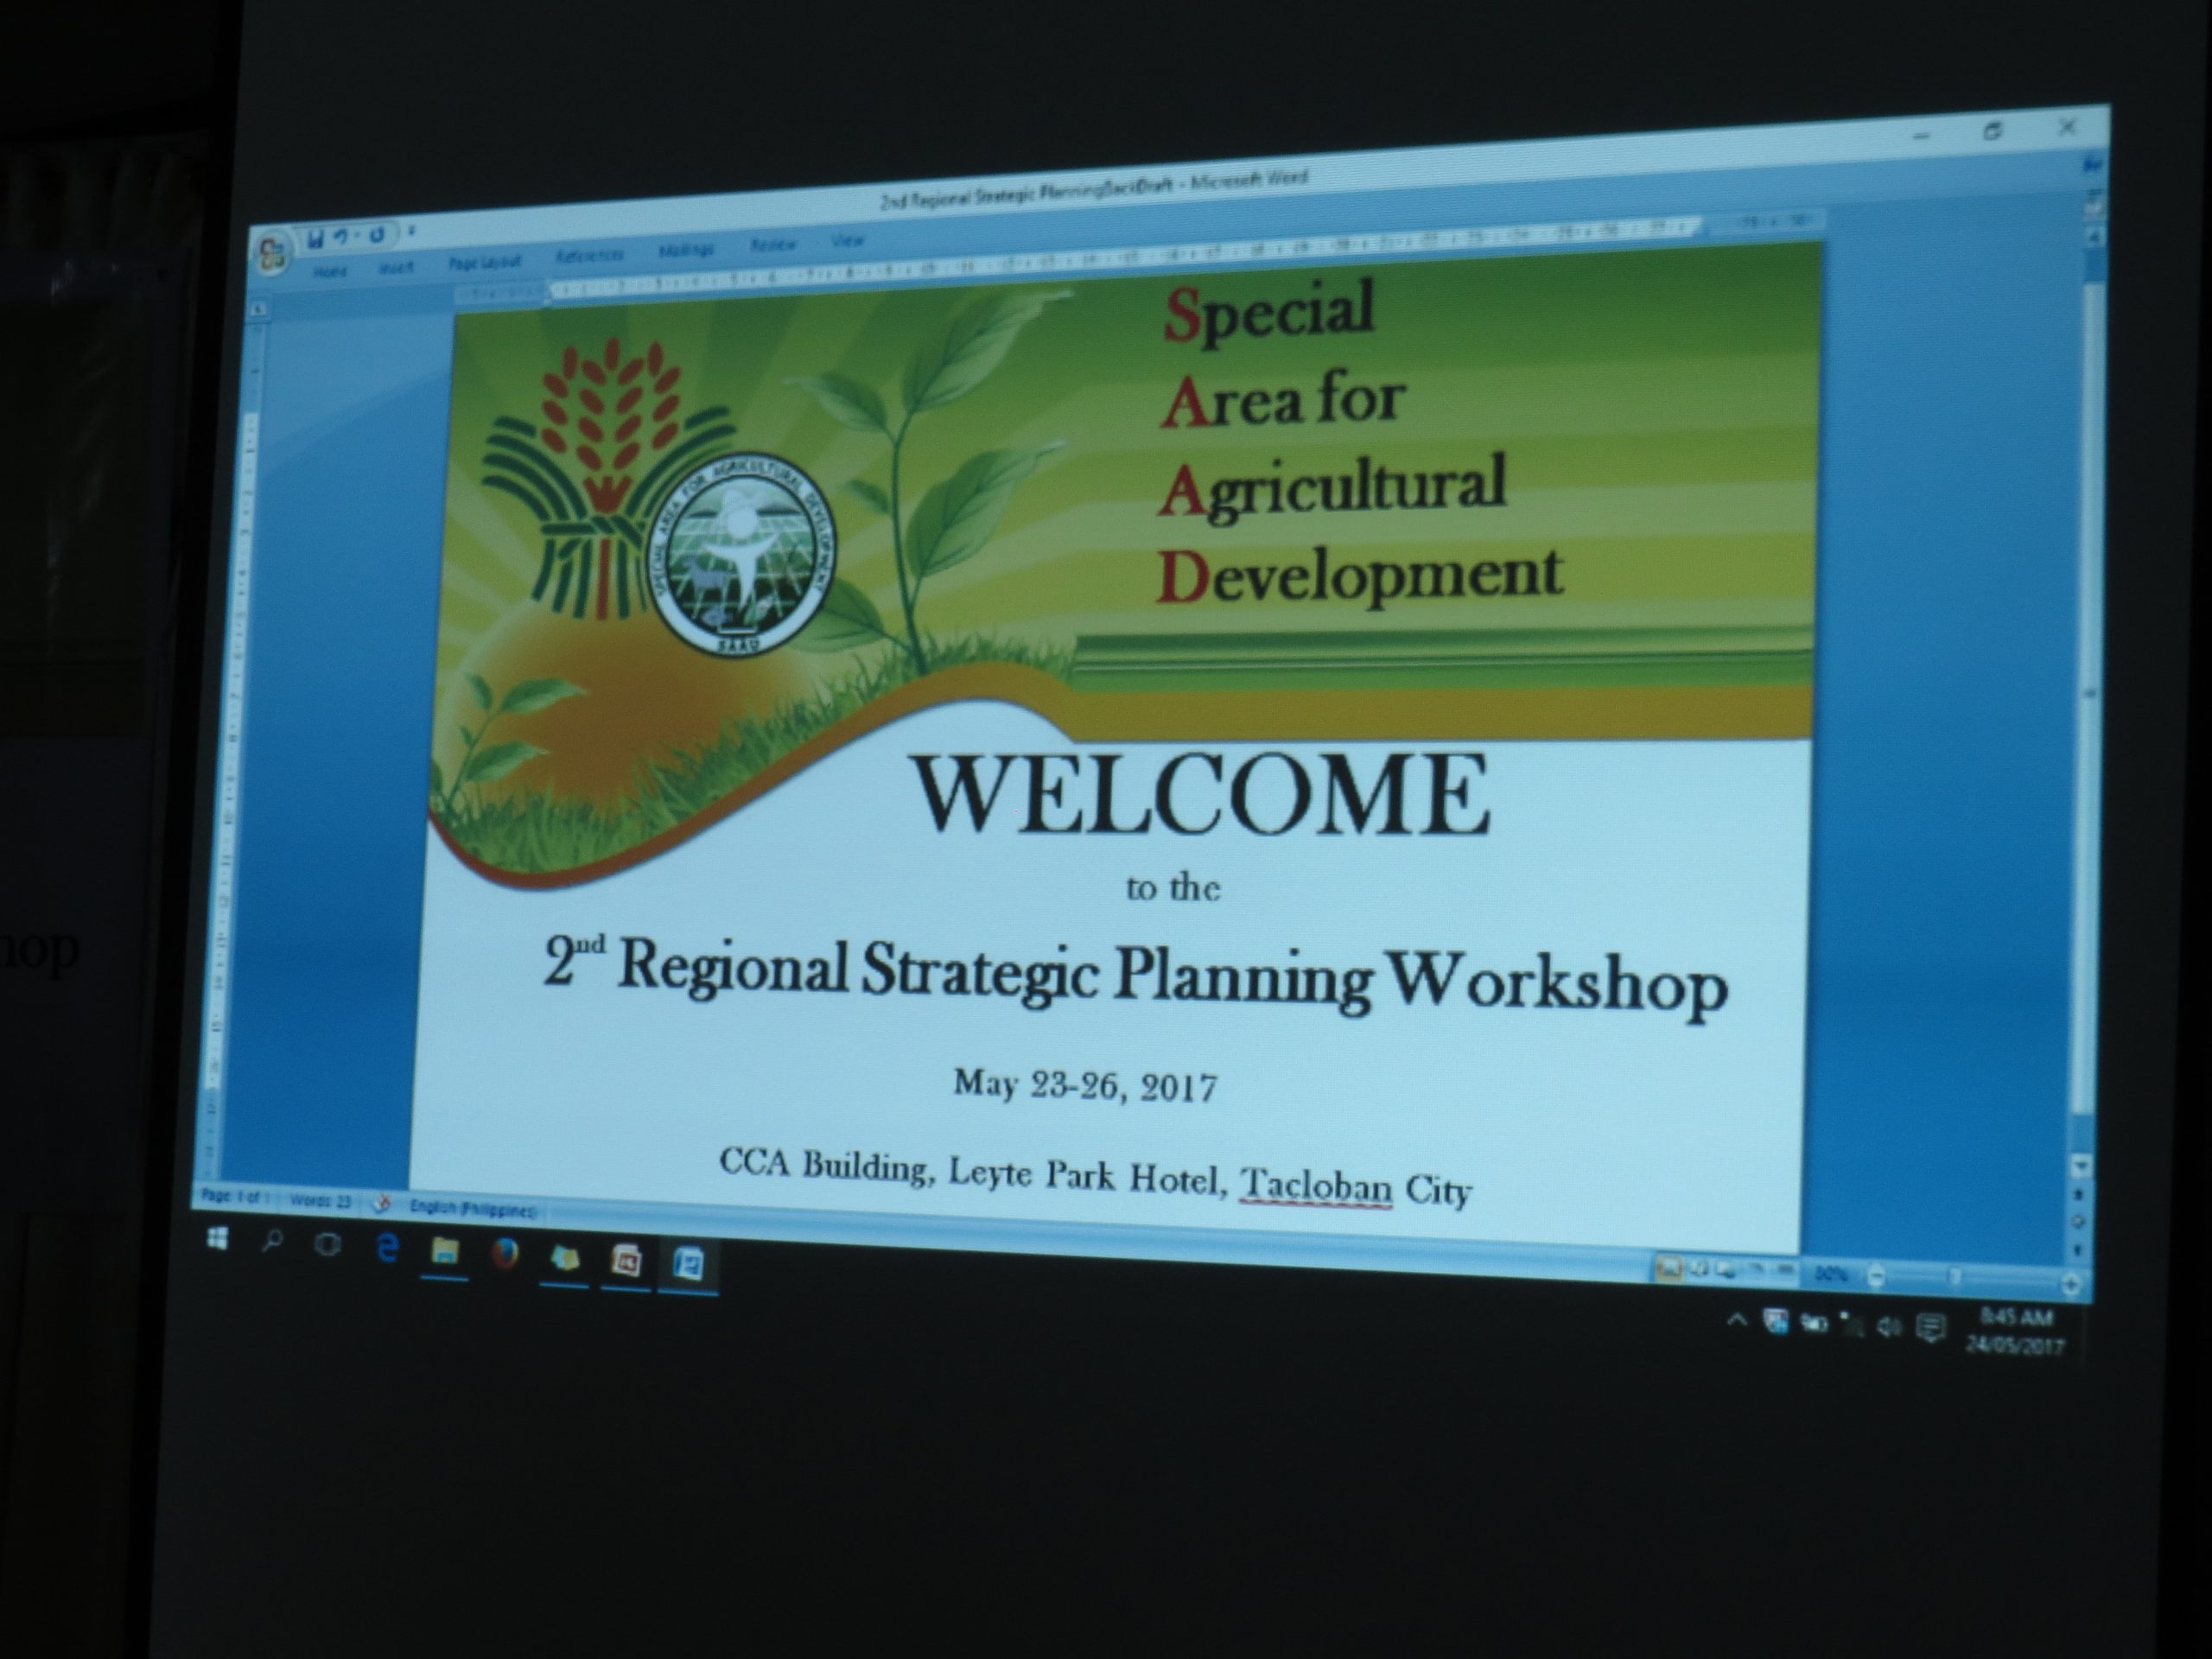 SAAD Program holds 2nd Regional Strategic Planning Workshop for Luzon and Visayas